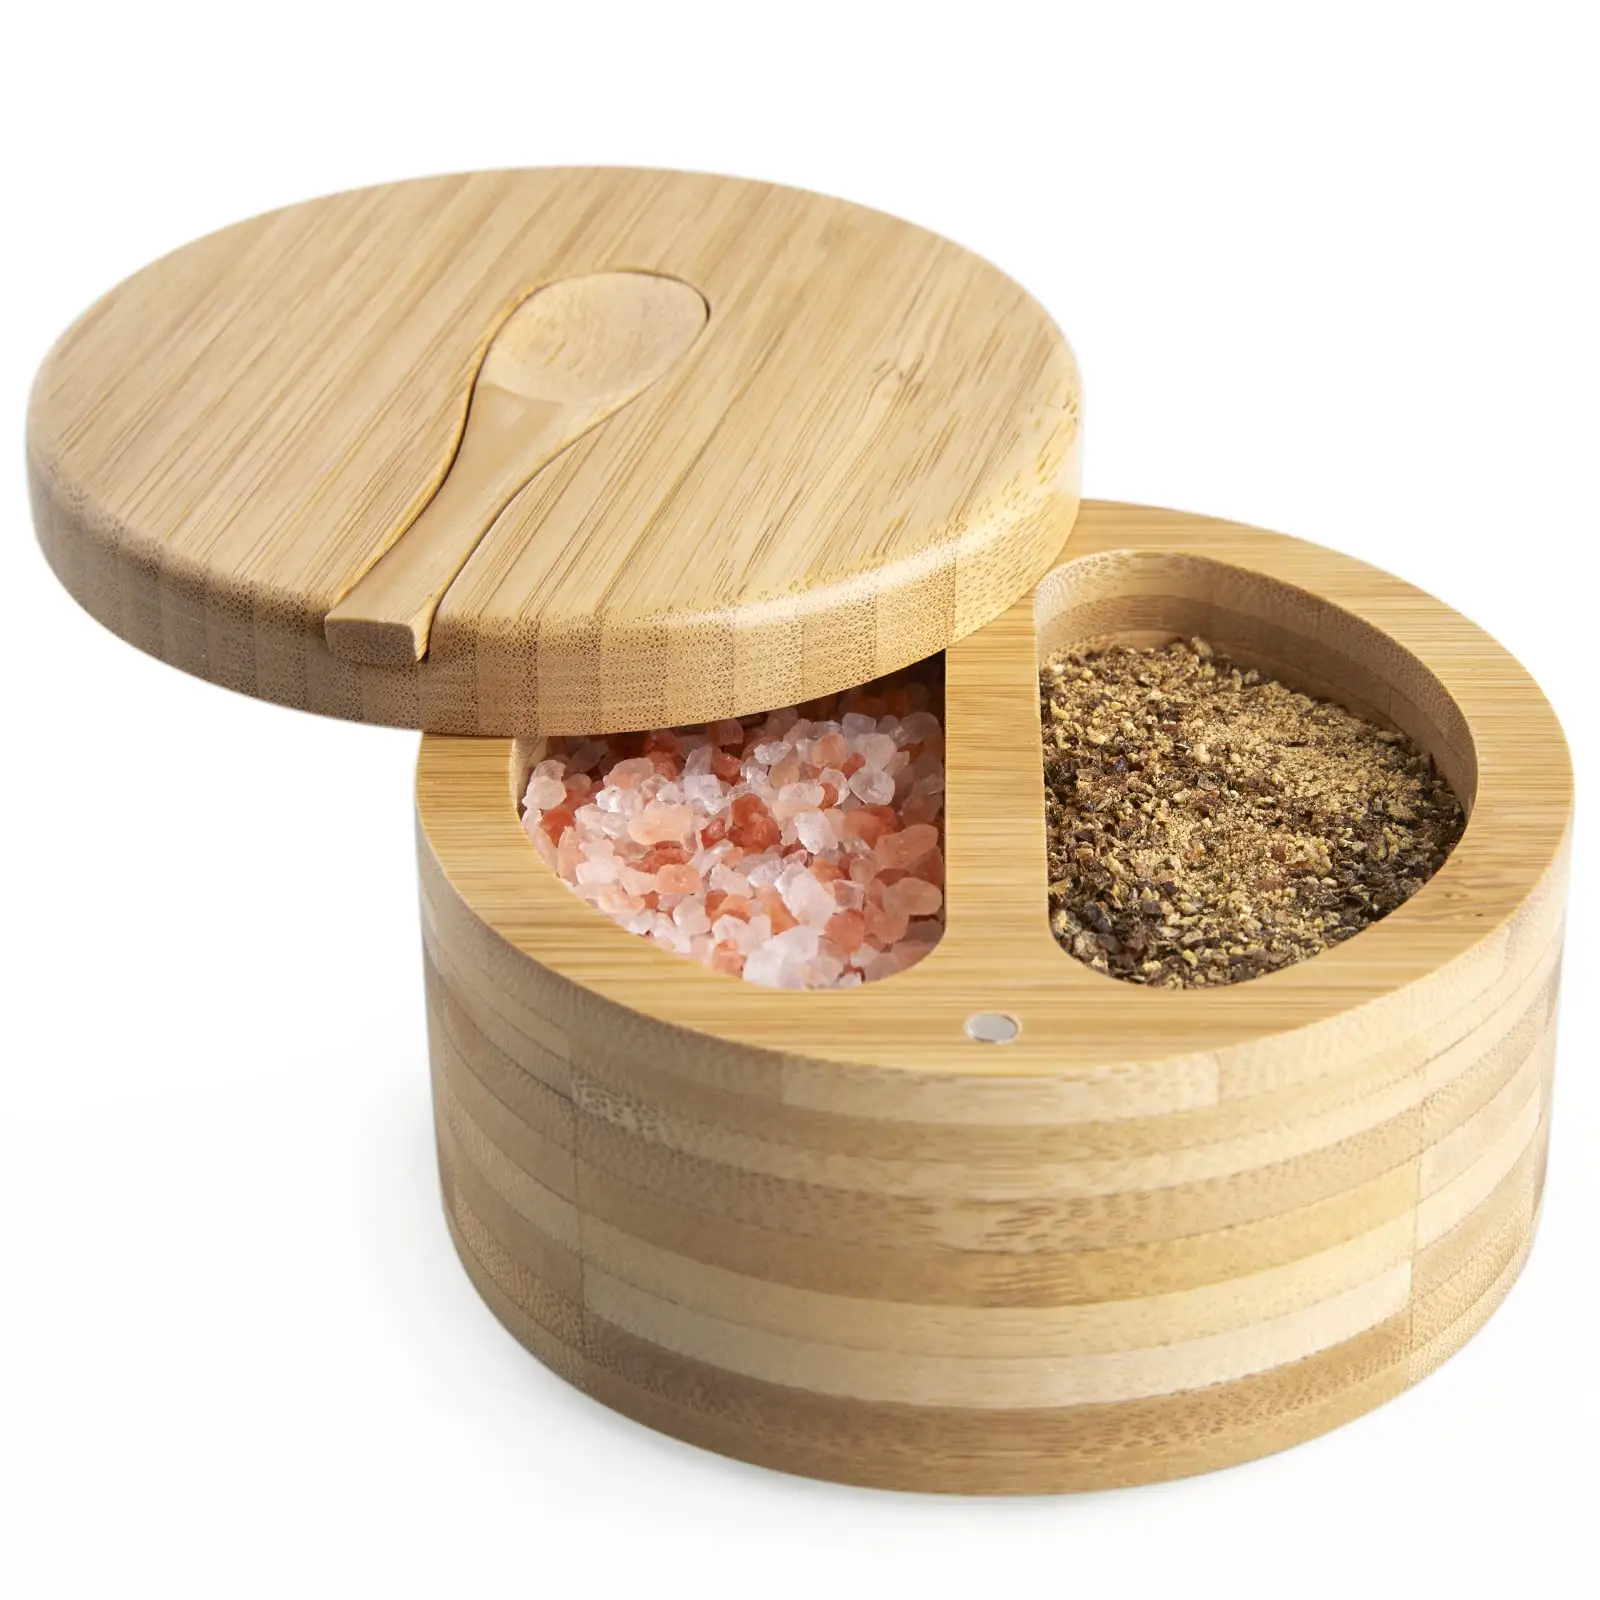 Recipiente grande de sal y pimienta, recipiente de sal de bambú con tapa giratoria y cuchara, 2 compartimentos